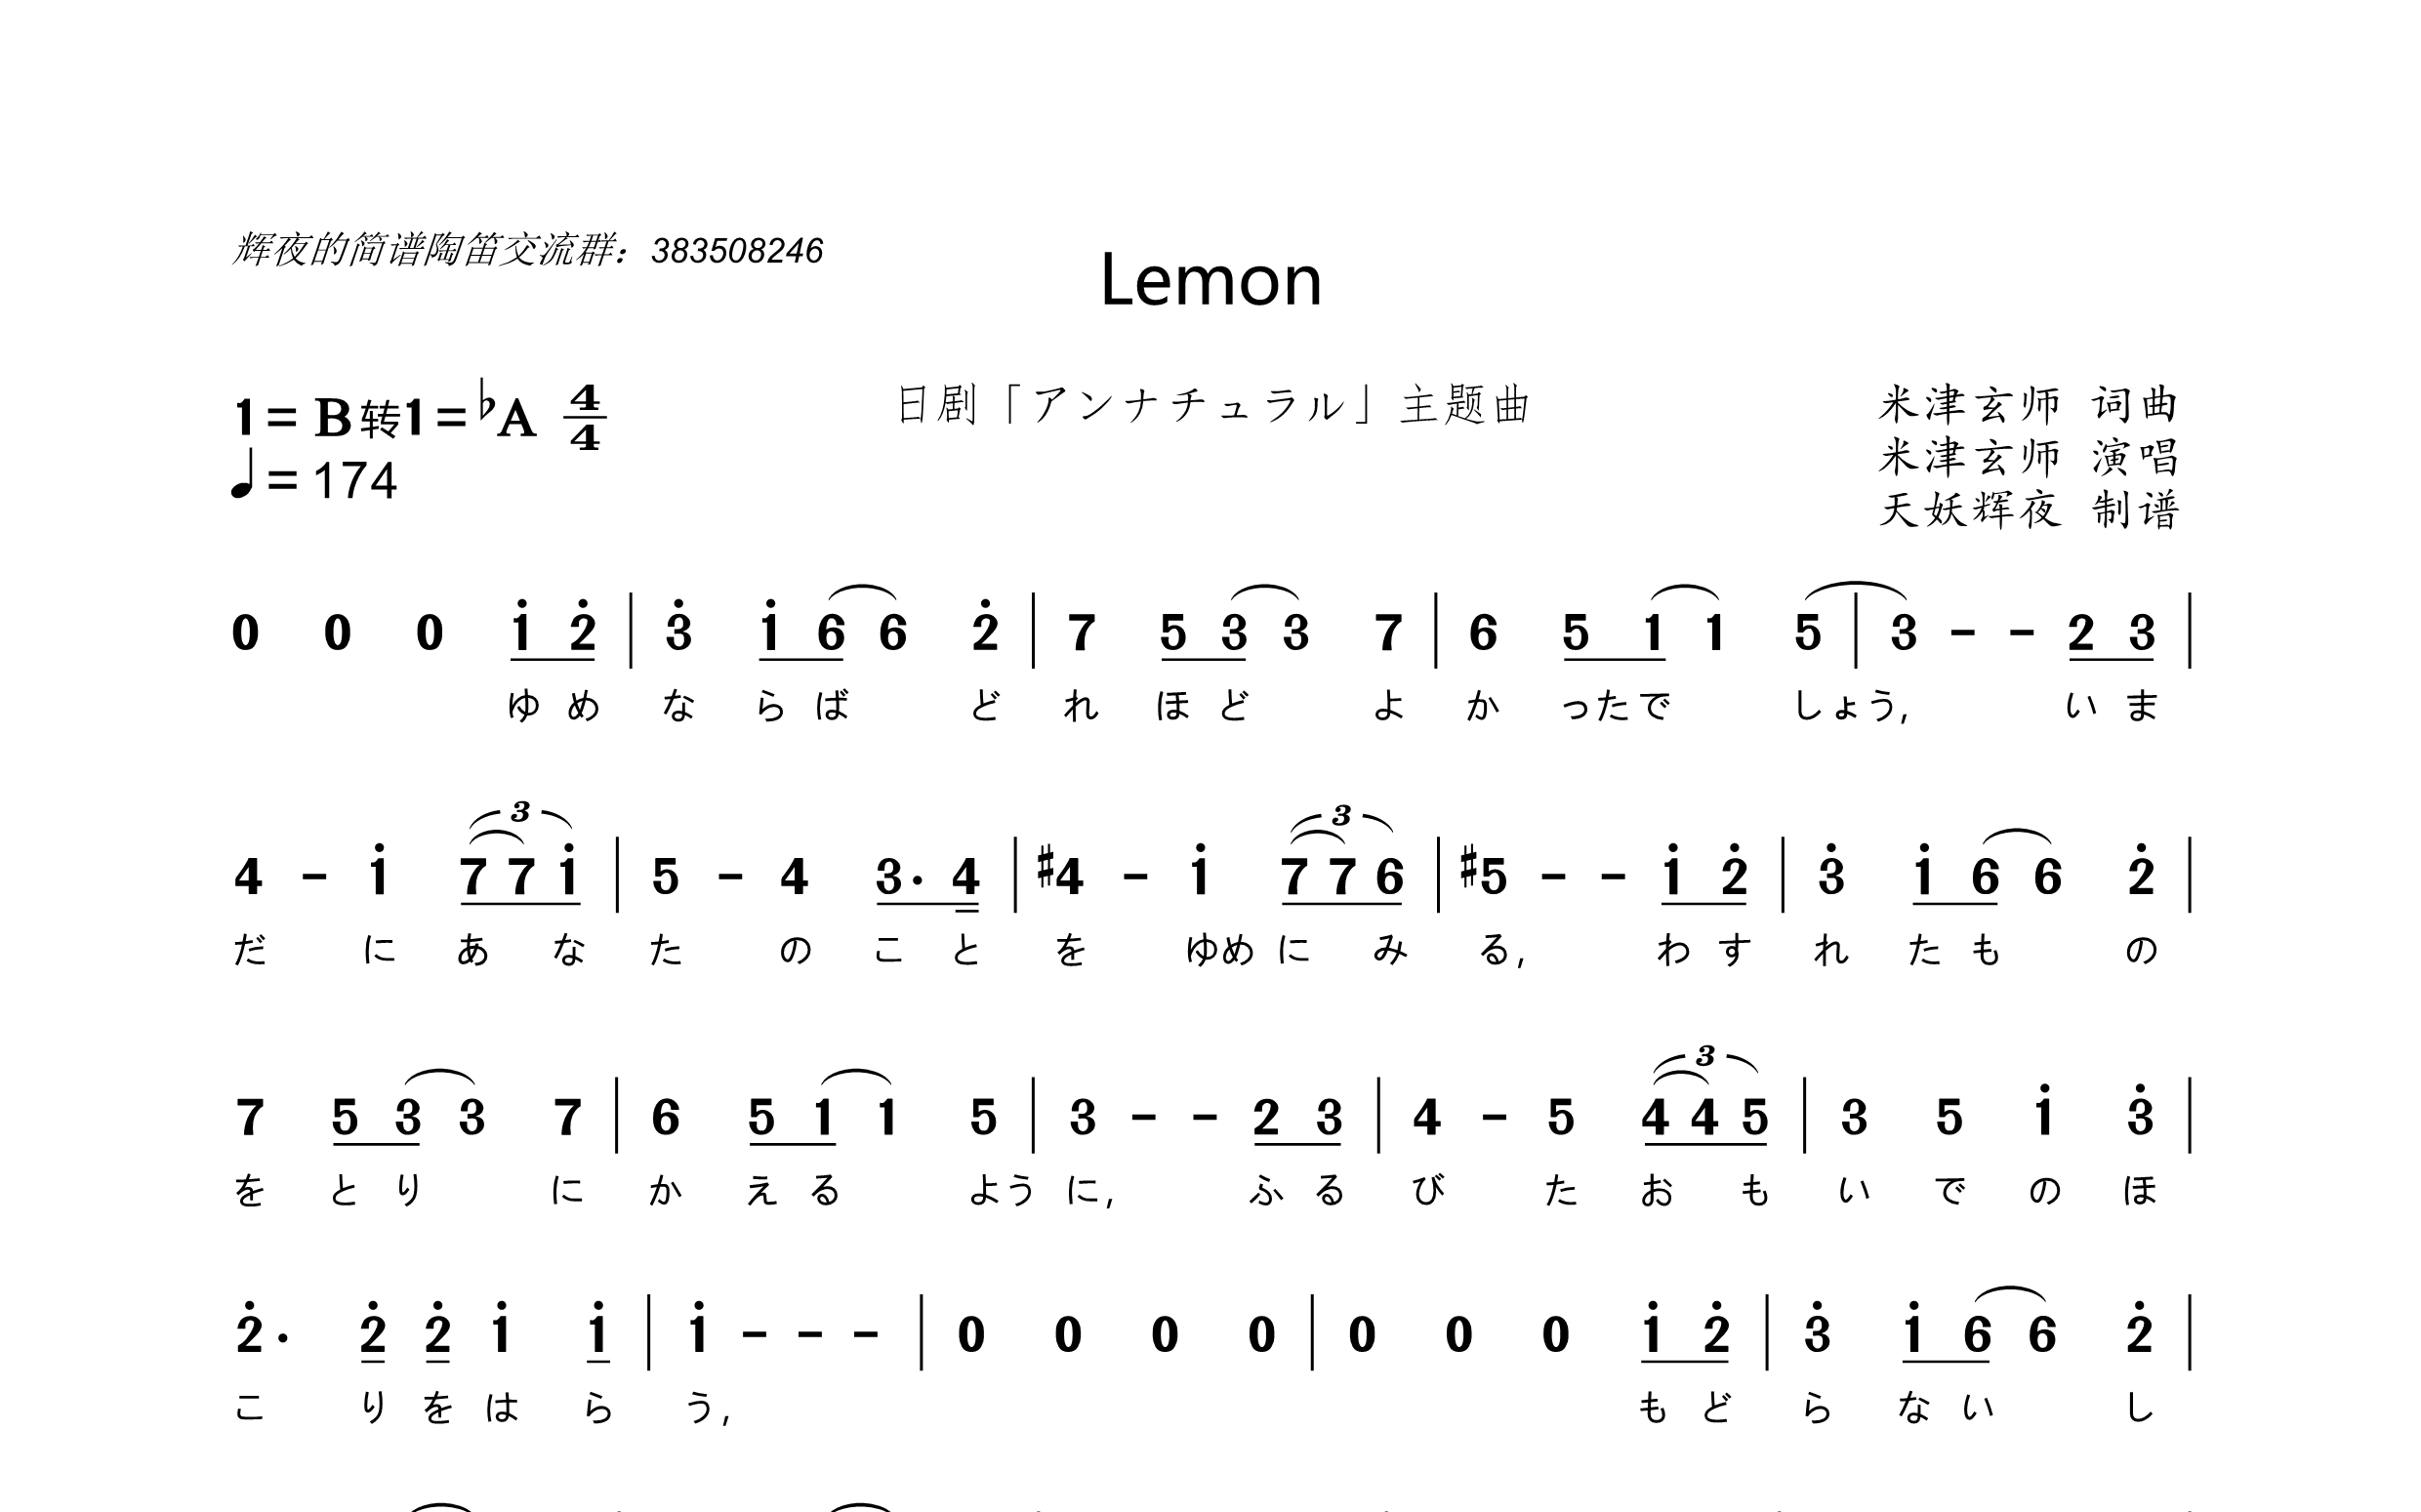 【天妖辉夜】《lemon》简谱怎么做——jpw4软件教学(第0~2p)